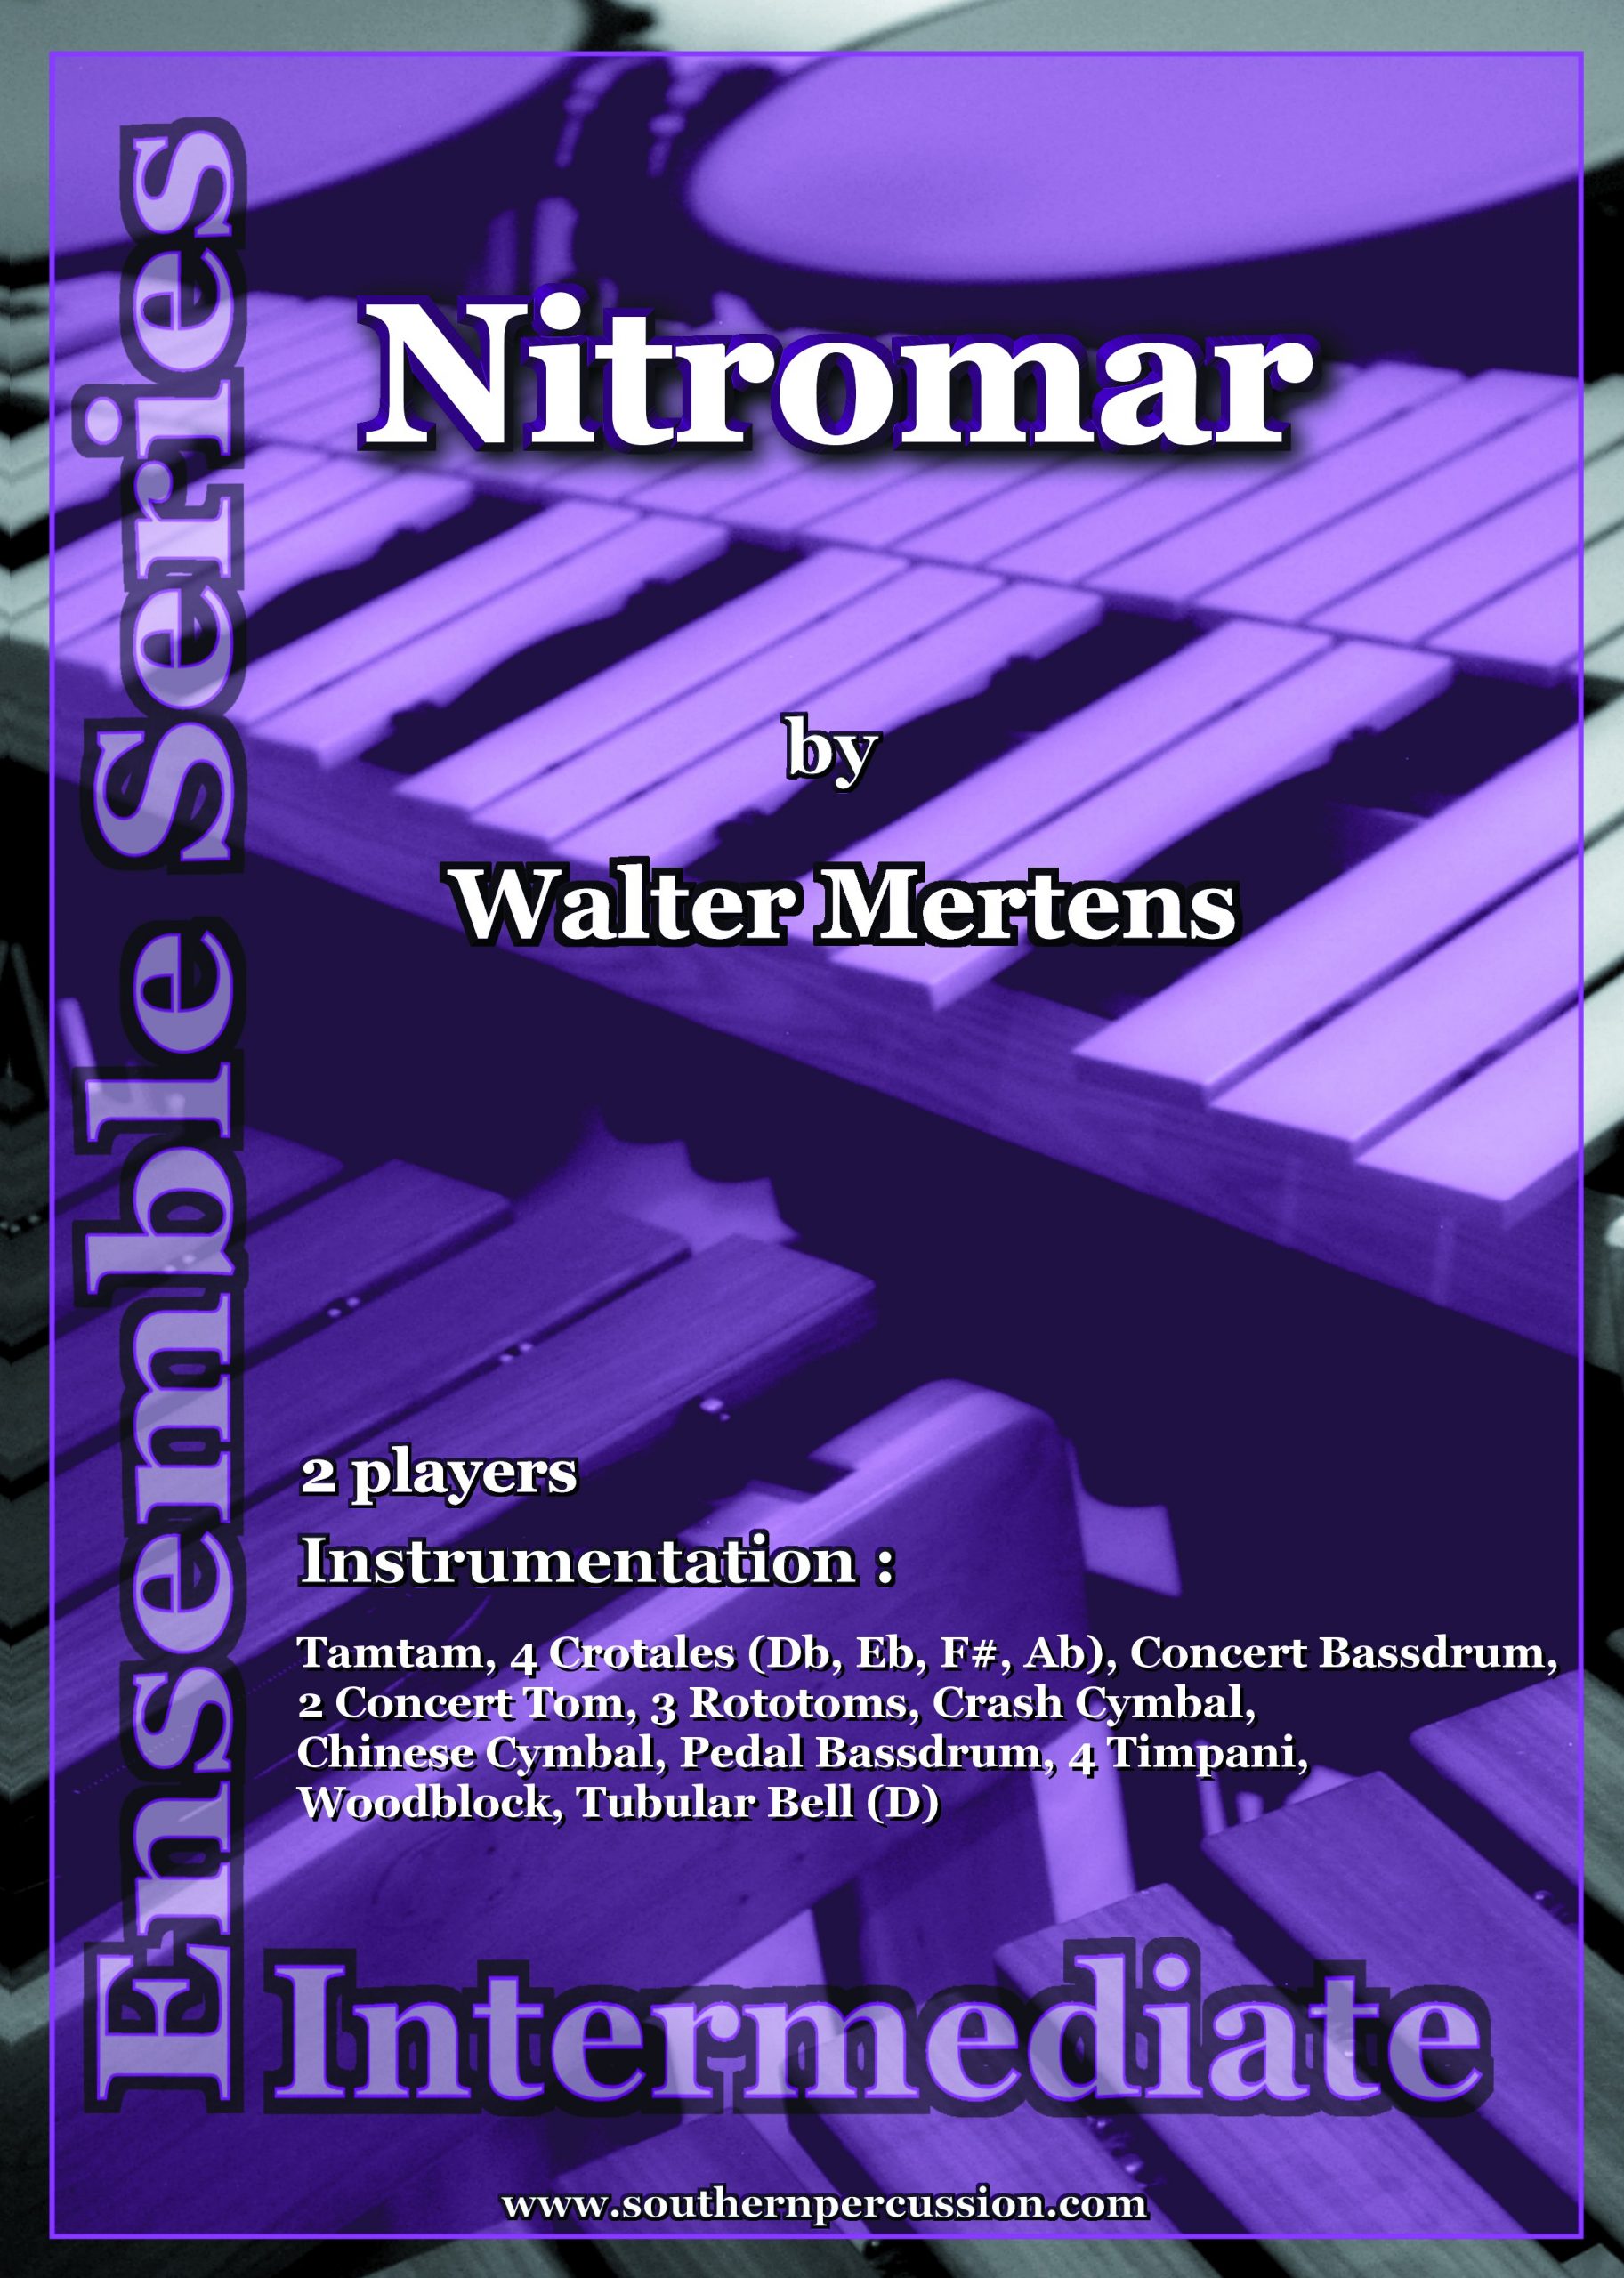 Nitromar by Walter Mertens